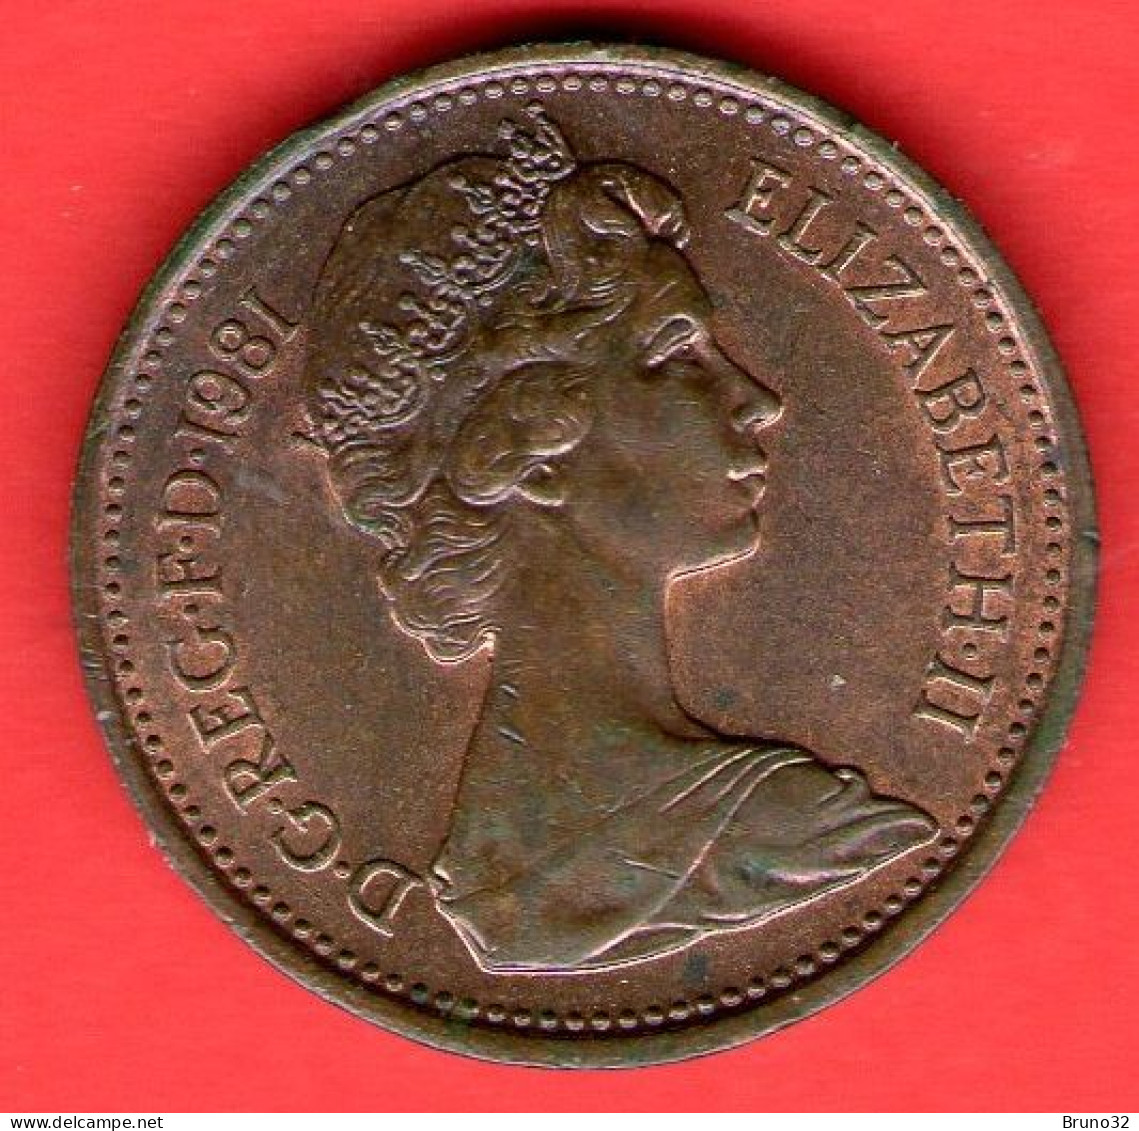 Gran Bretagna - Great Britain - GB - 1 Penny 1981 - QFDC/aUNC - Come Da Foto - 1 Penny & 1 New Penny